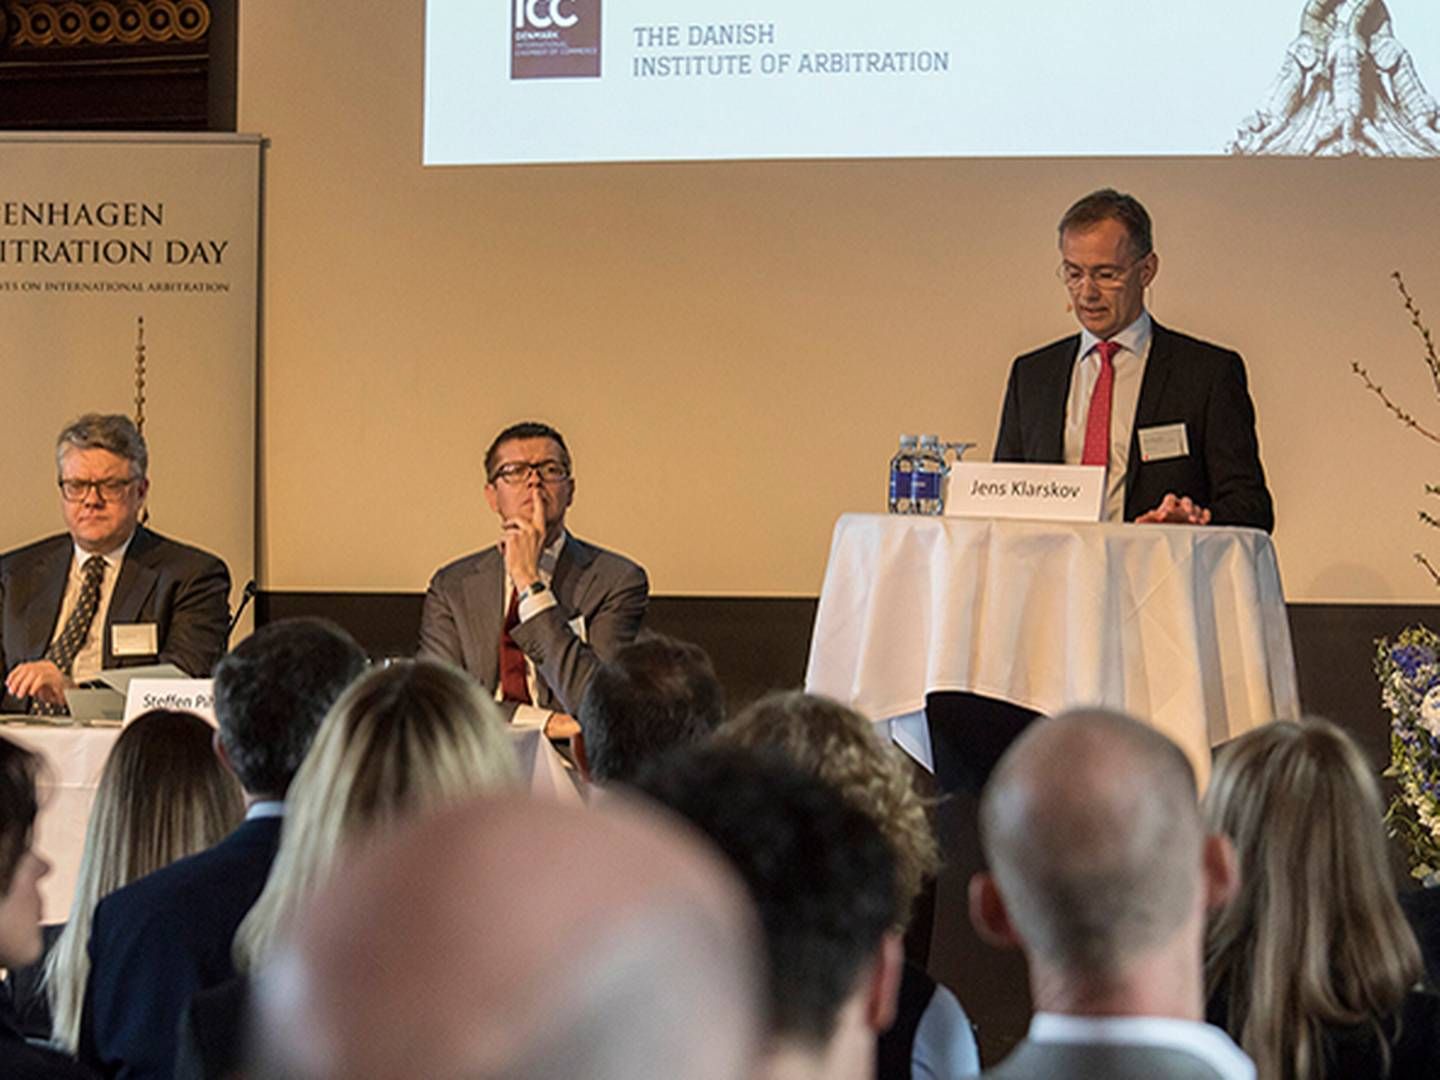 Generalsekretær i ICC, Jens Klarskov, på talerstolen, mens Rene Offersen og Steffen Pihlblad lytter ved hans side. | Foto: Ole Haupt